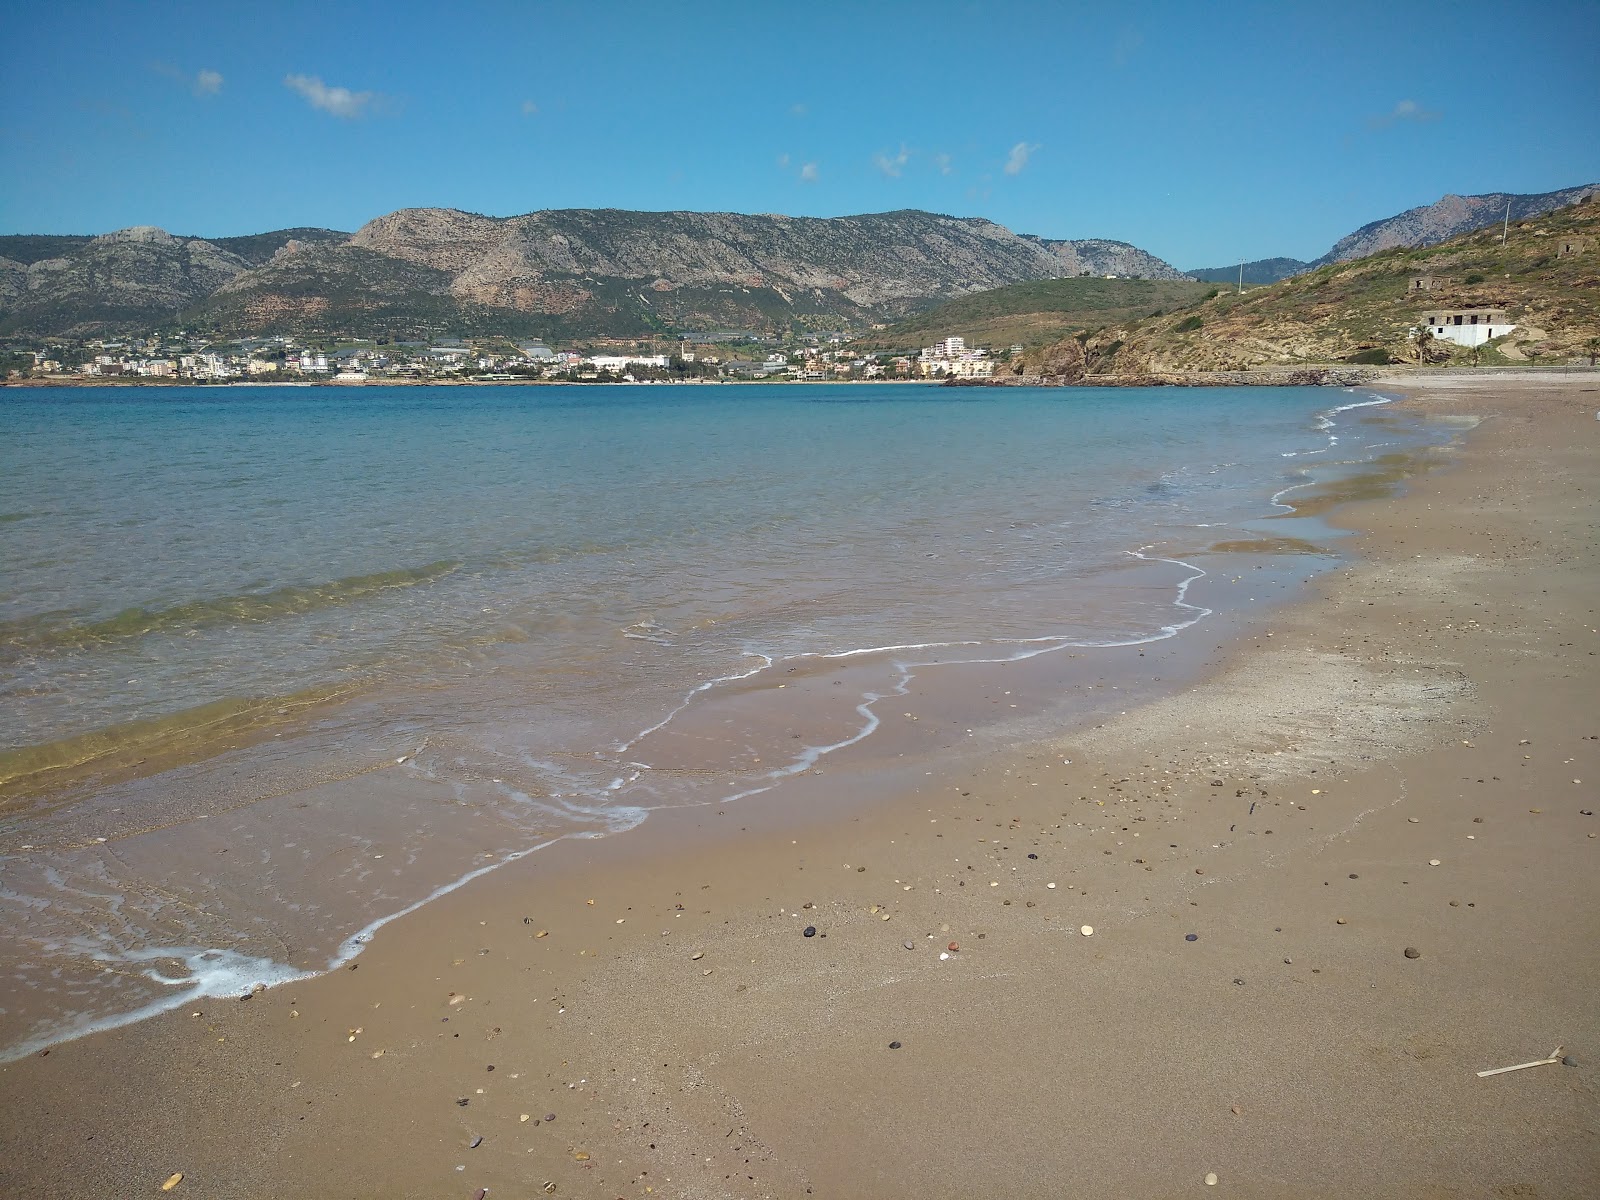 Photo of Incekum beach beach resort area